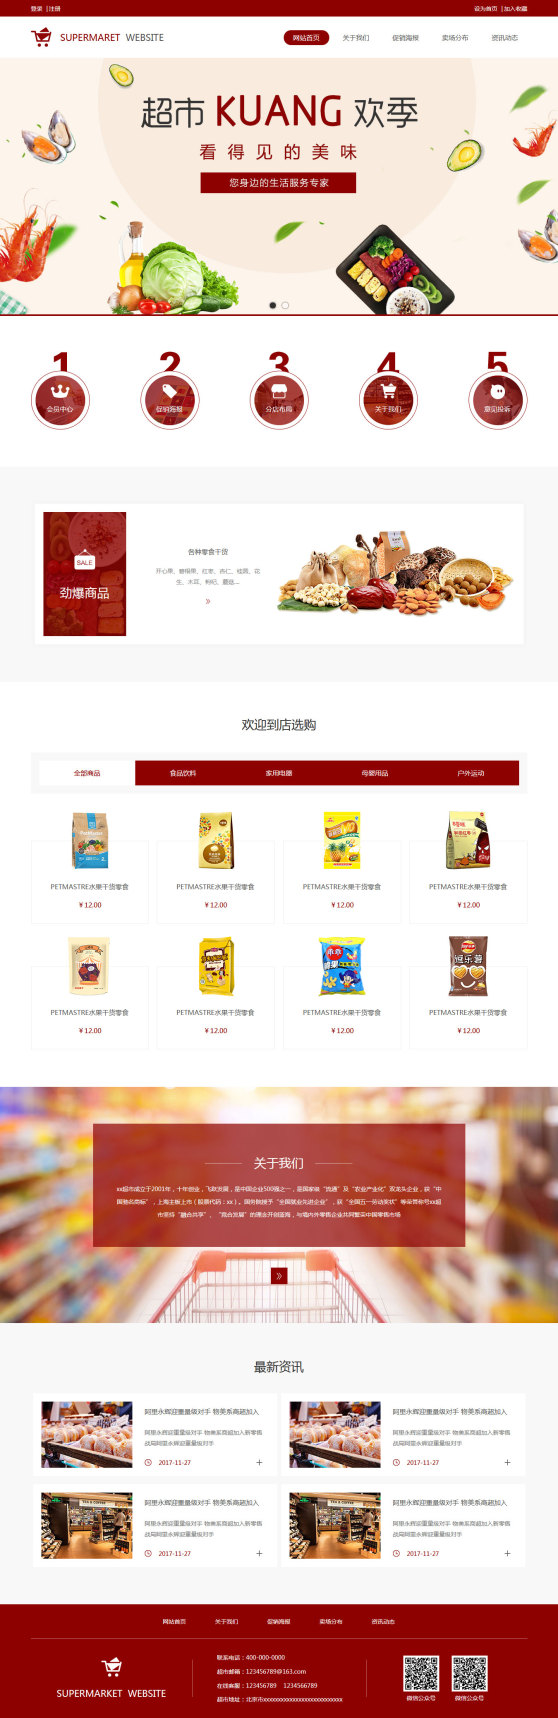 原创超市企业网站模板